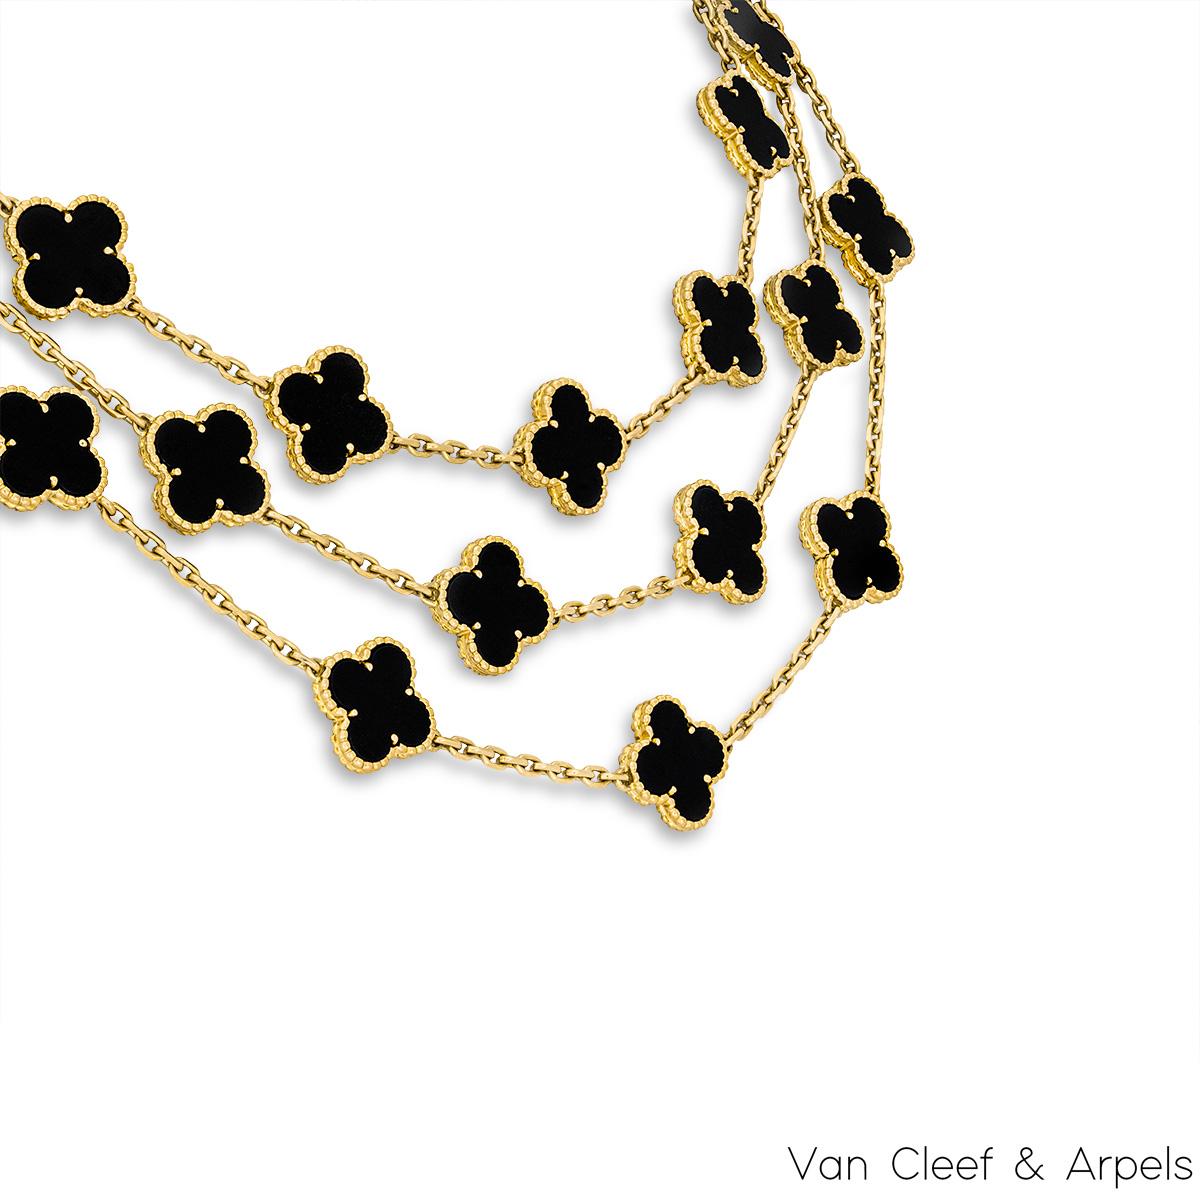 Un icónico collar de oro amarillo de 18 quilates de Van Cleef & Arpels de la colección Vintage Alhambra. El collar presenta 29 icónicos motivos de trébol de 4 hojas, cada uno con un borde de cuentas y una incrustación de ónice, engastados a lo largo